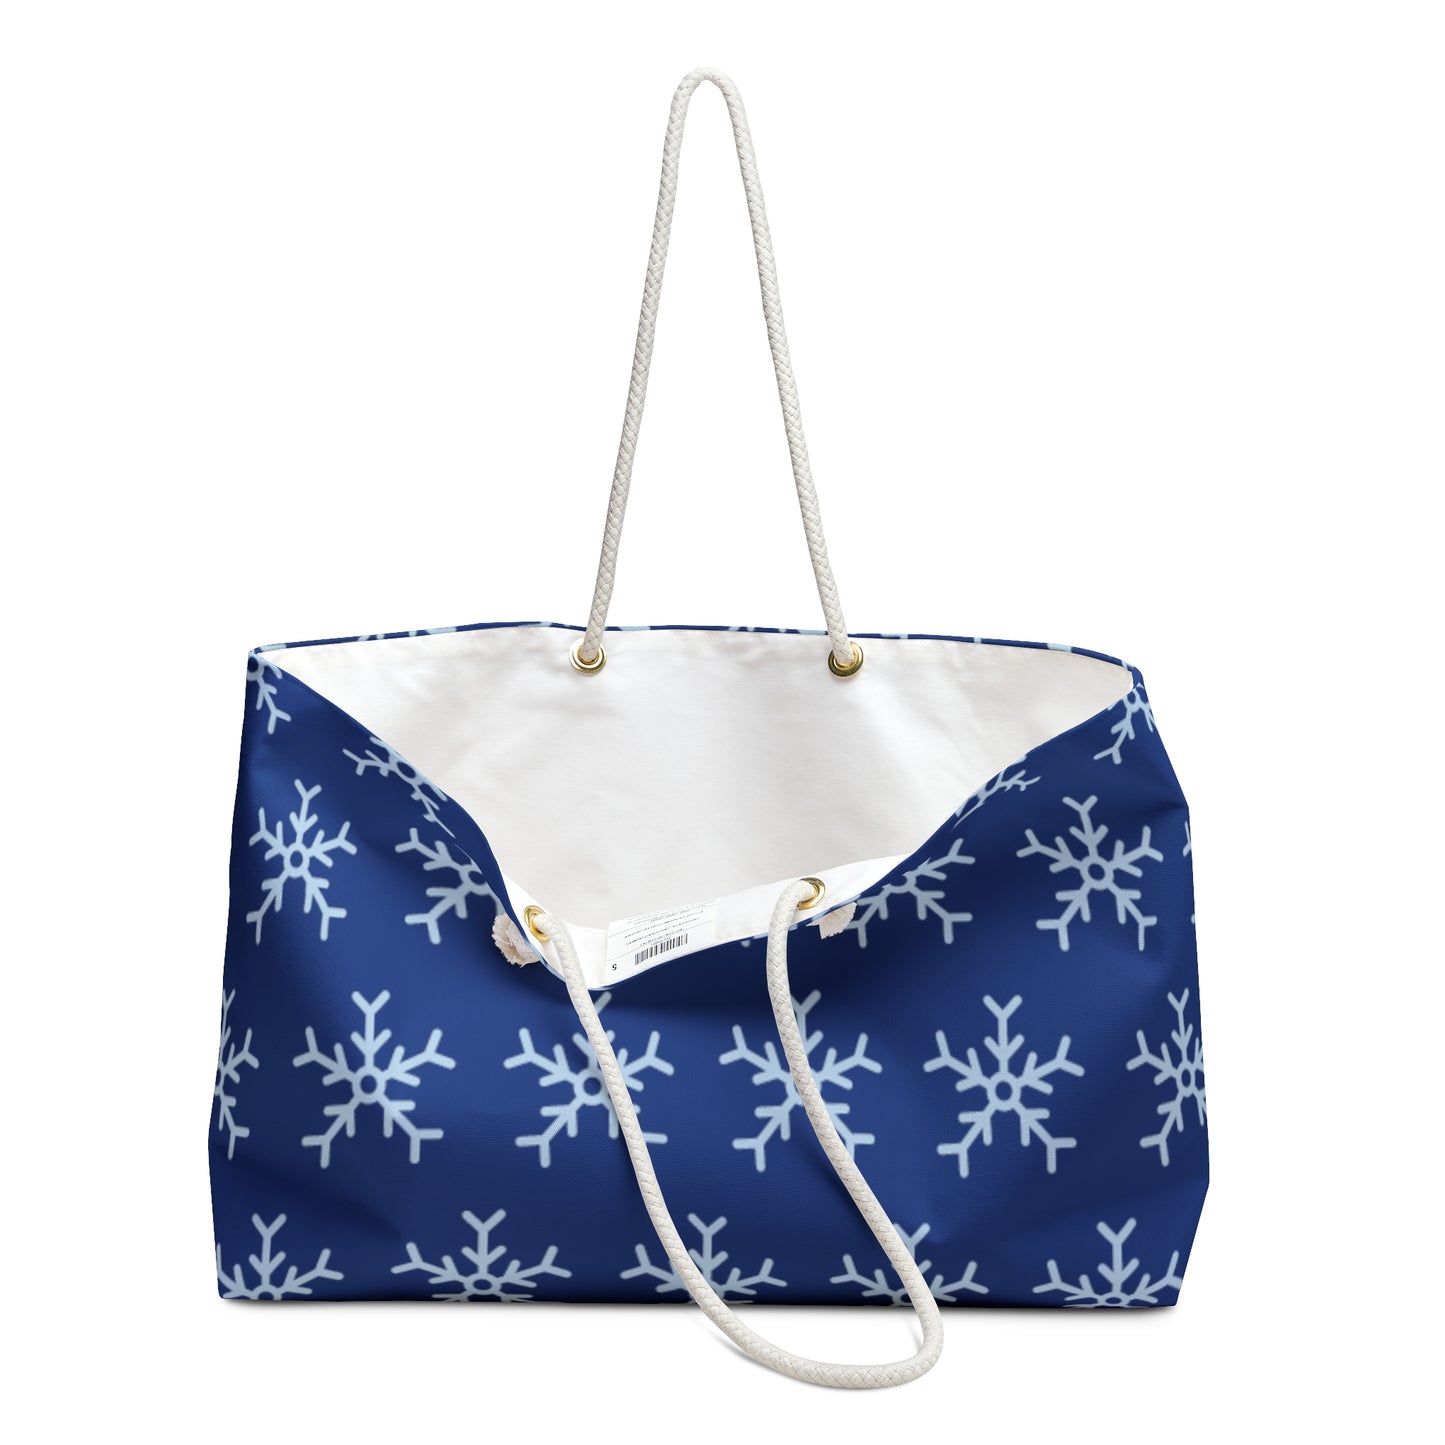 Let It Snow! Navy Snowflake Weekender Bag